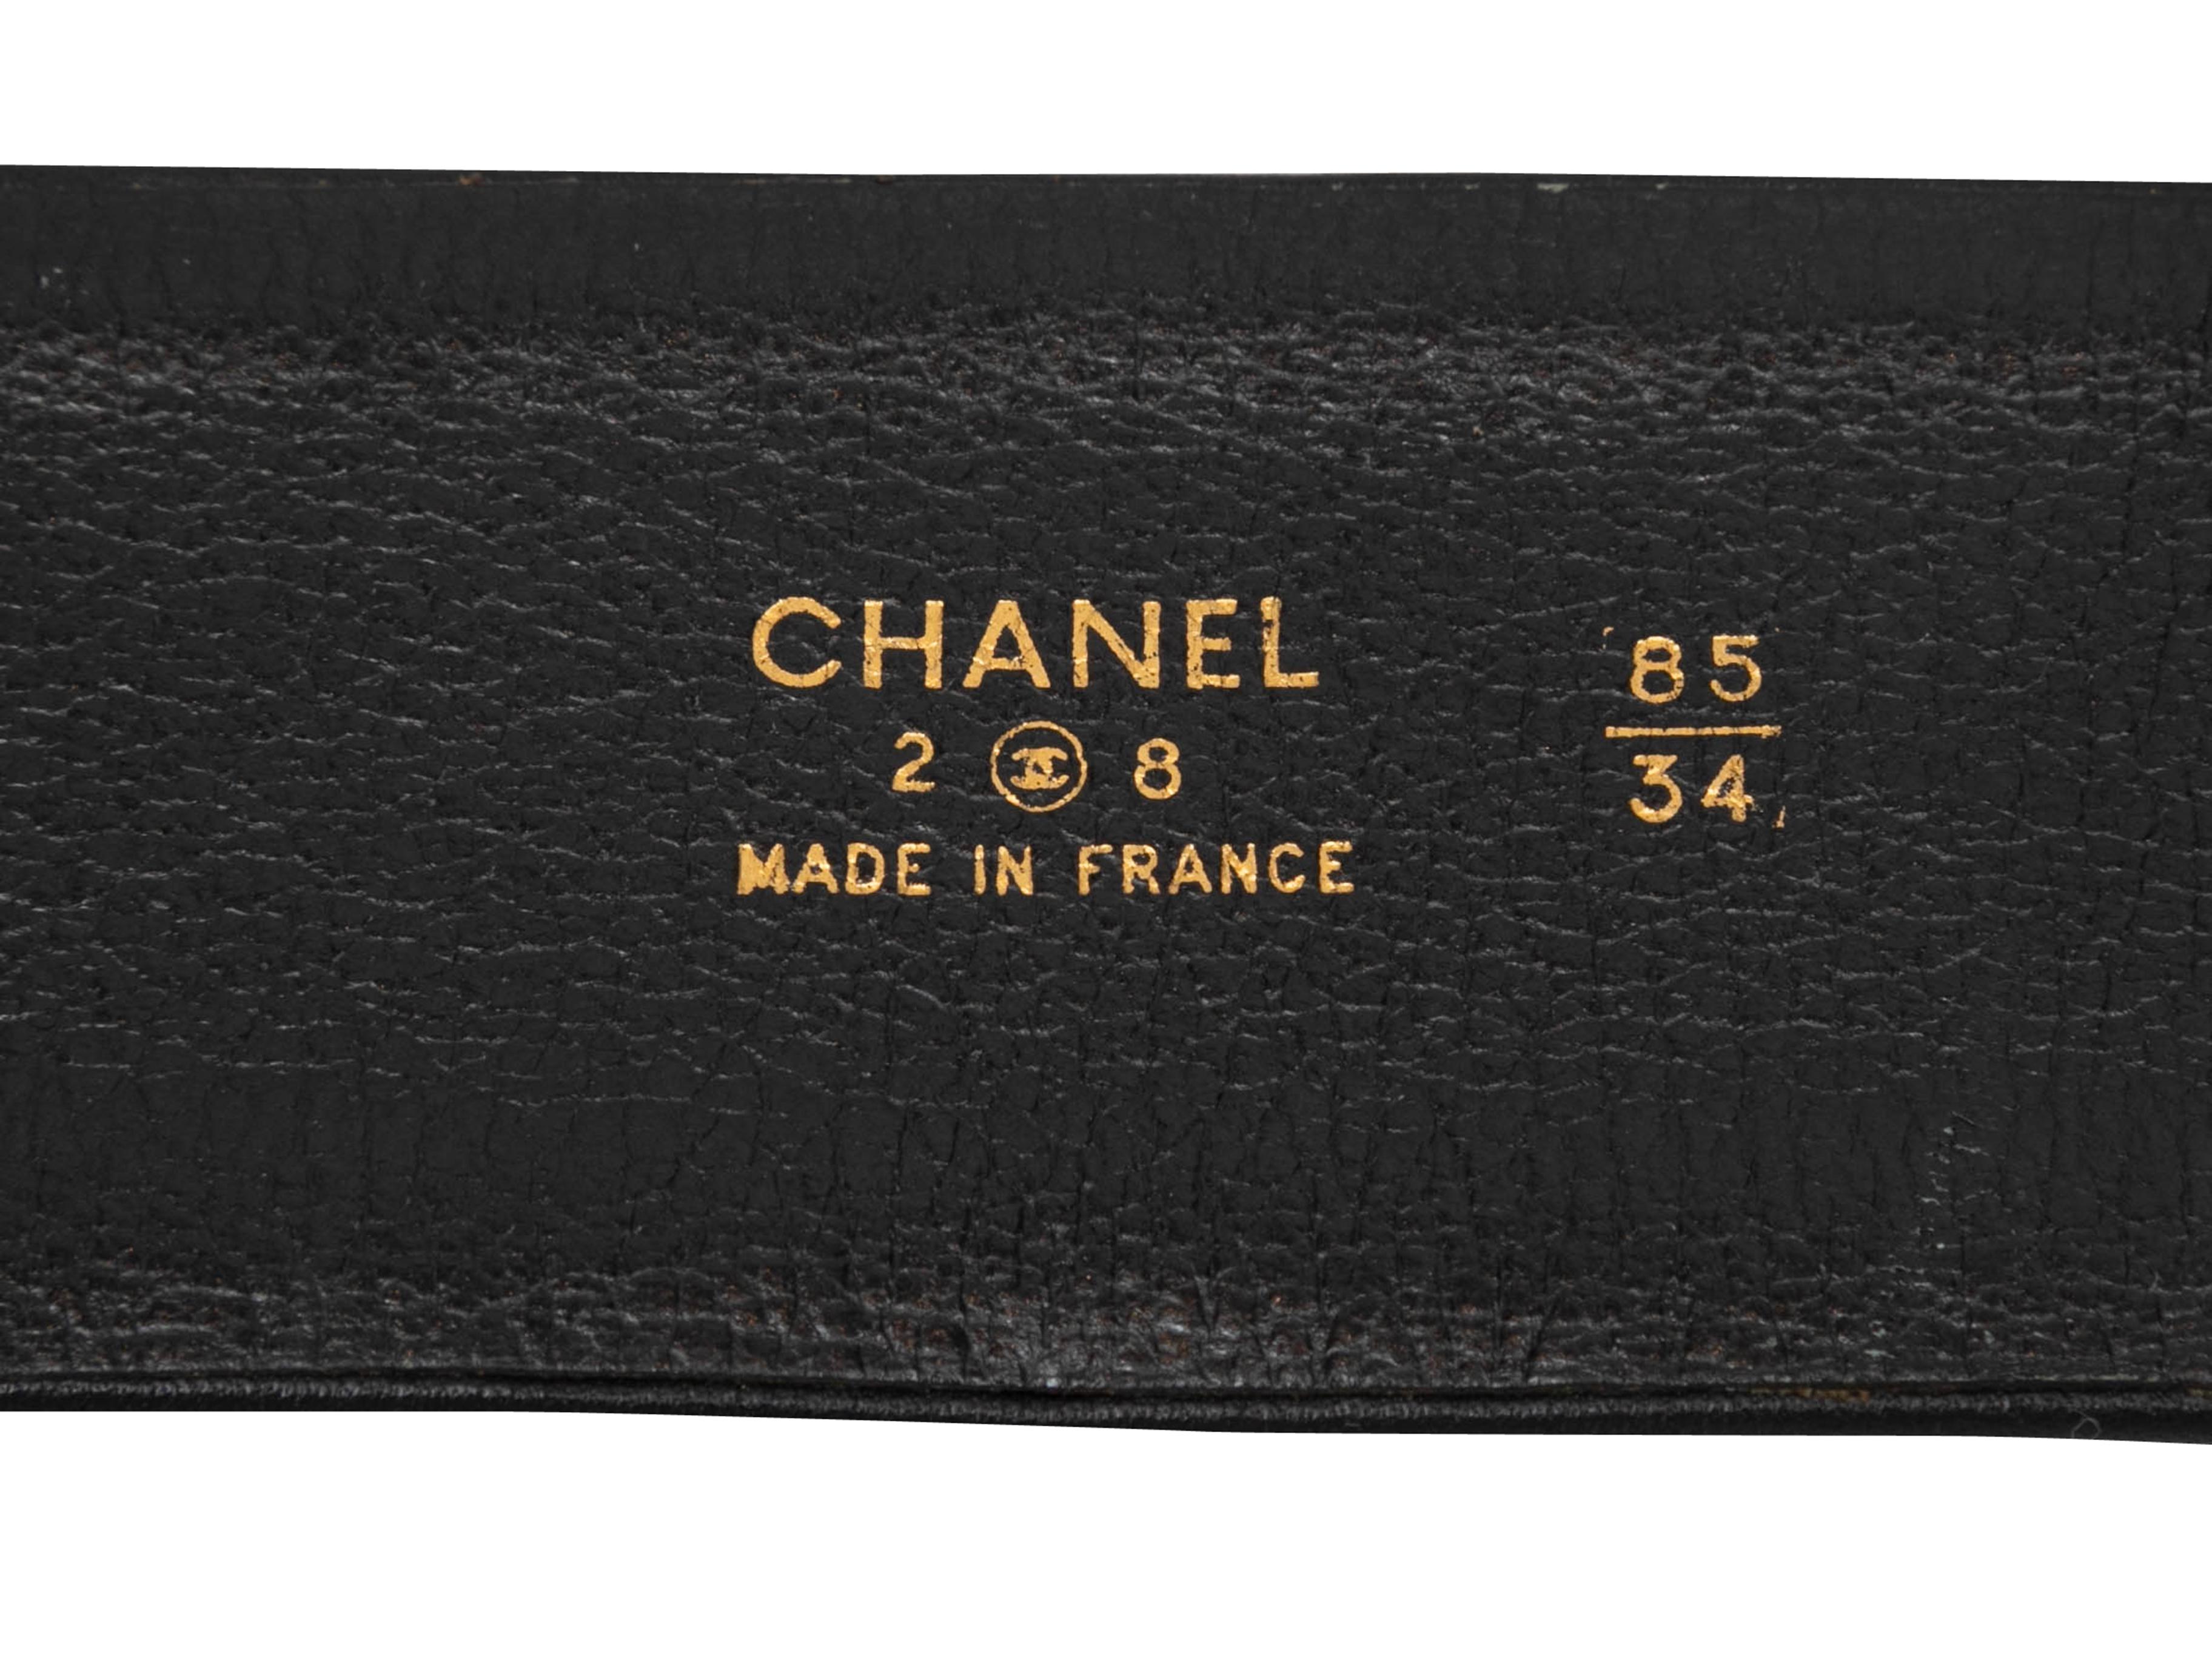 Ceinture vintage en cuir noir et mailles dorées de Chanel. De la Collectional Printemps/Eté 1993. Fermeture à boucle sur le devant. Hauteur de 1,75